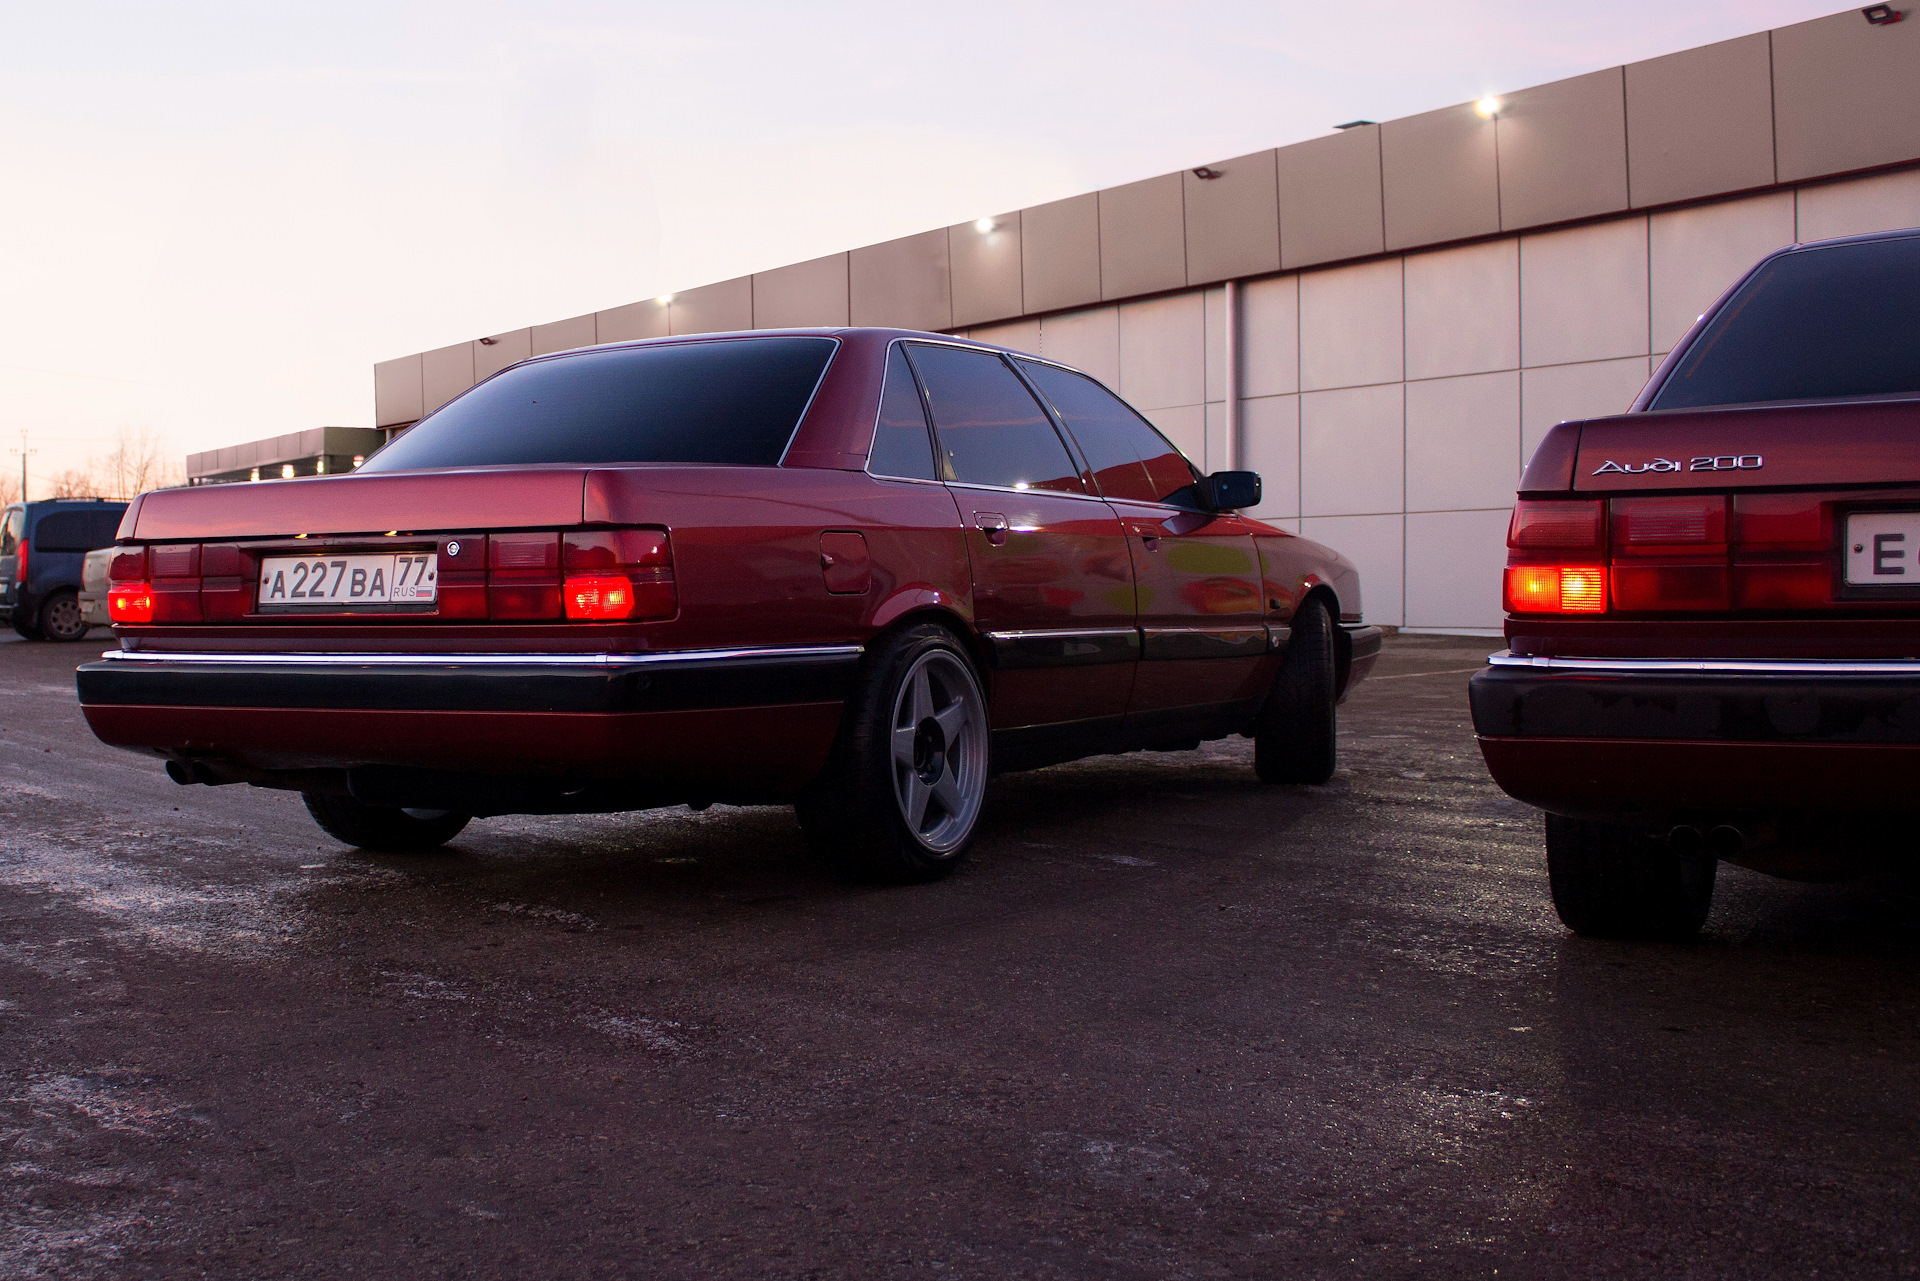 200 20 а 6 60. "Audi" "200" "1989" XS. "Audi" "200" "1991" GZ. Тонированная Ауди 200. "Audi" "200" "1979" LX.